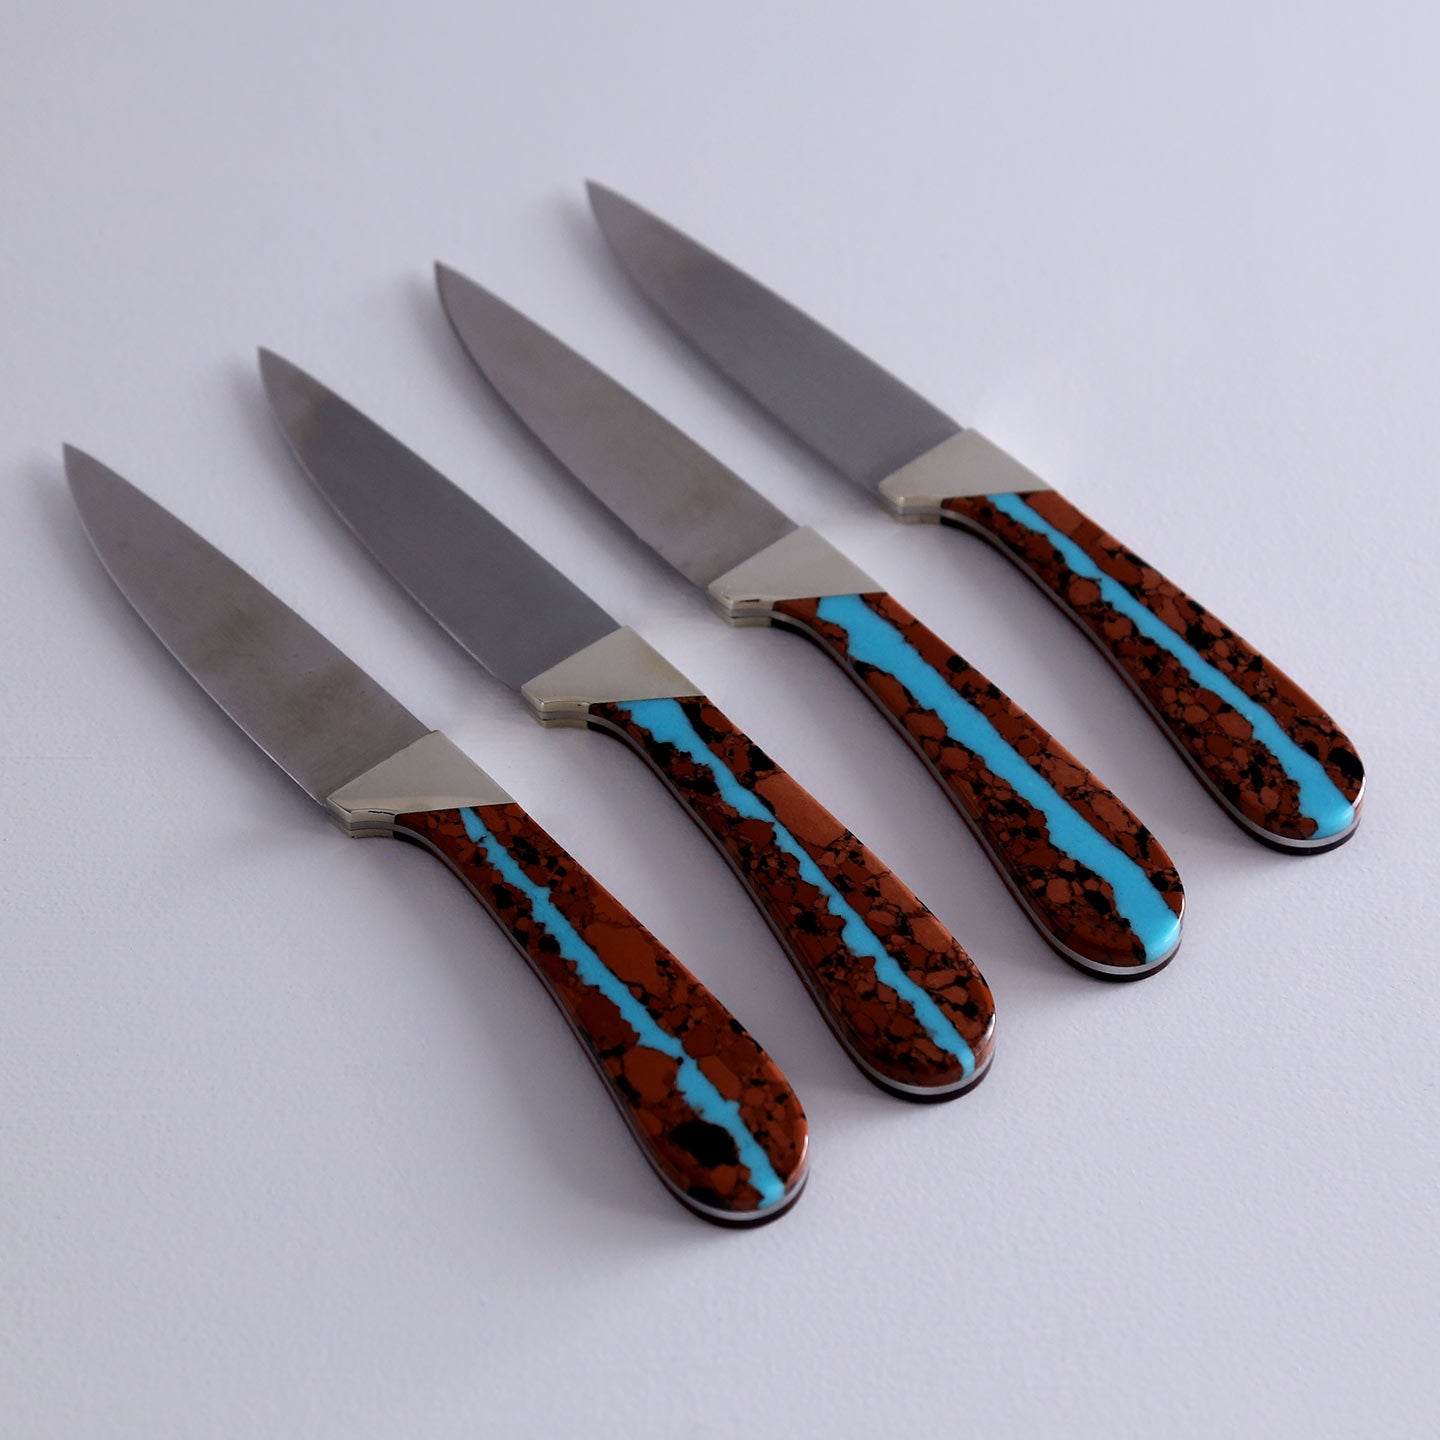 Handmade Damascus Kitchen Steak Knives, Steak Knife Set, Handmade